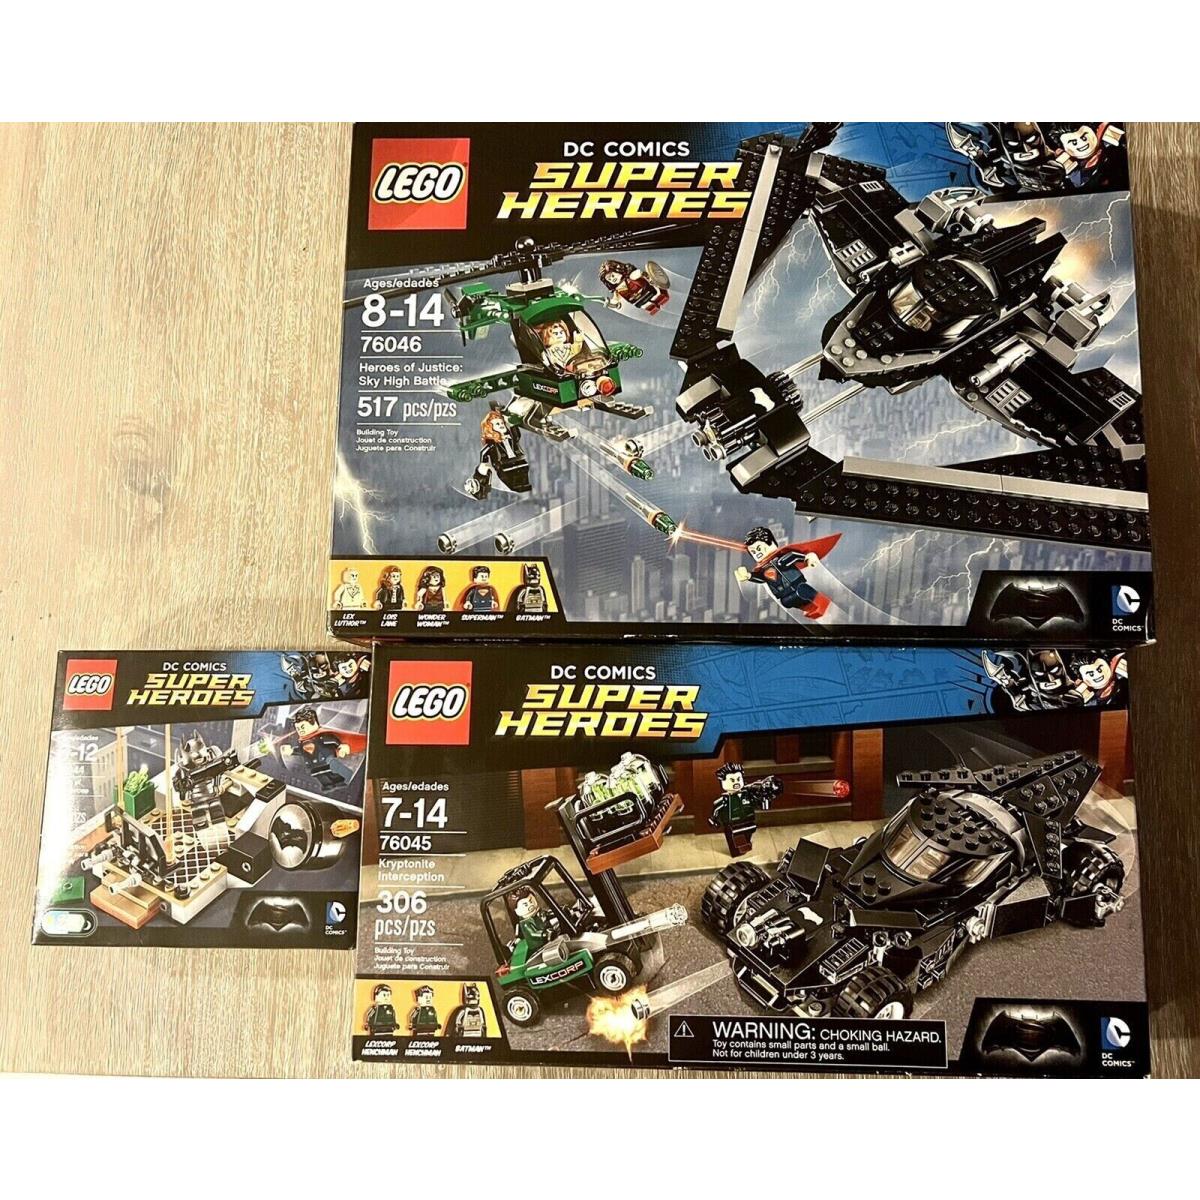 Lego 76044 76045 76046 DC Comics Super Heroes of Justice Batwing Bat Mobile Set